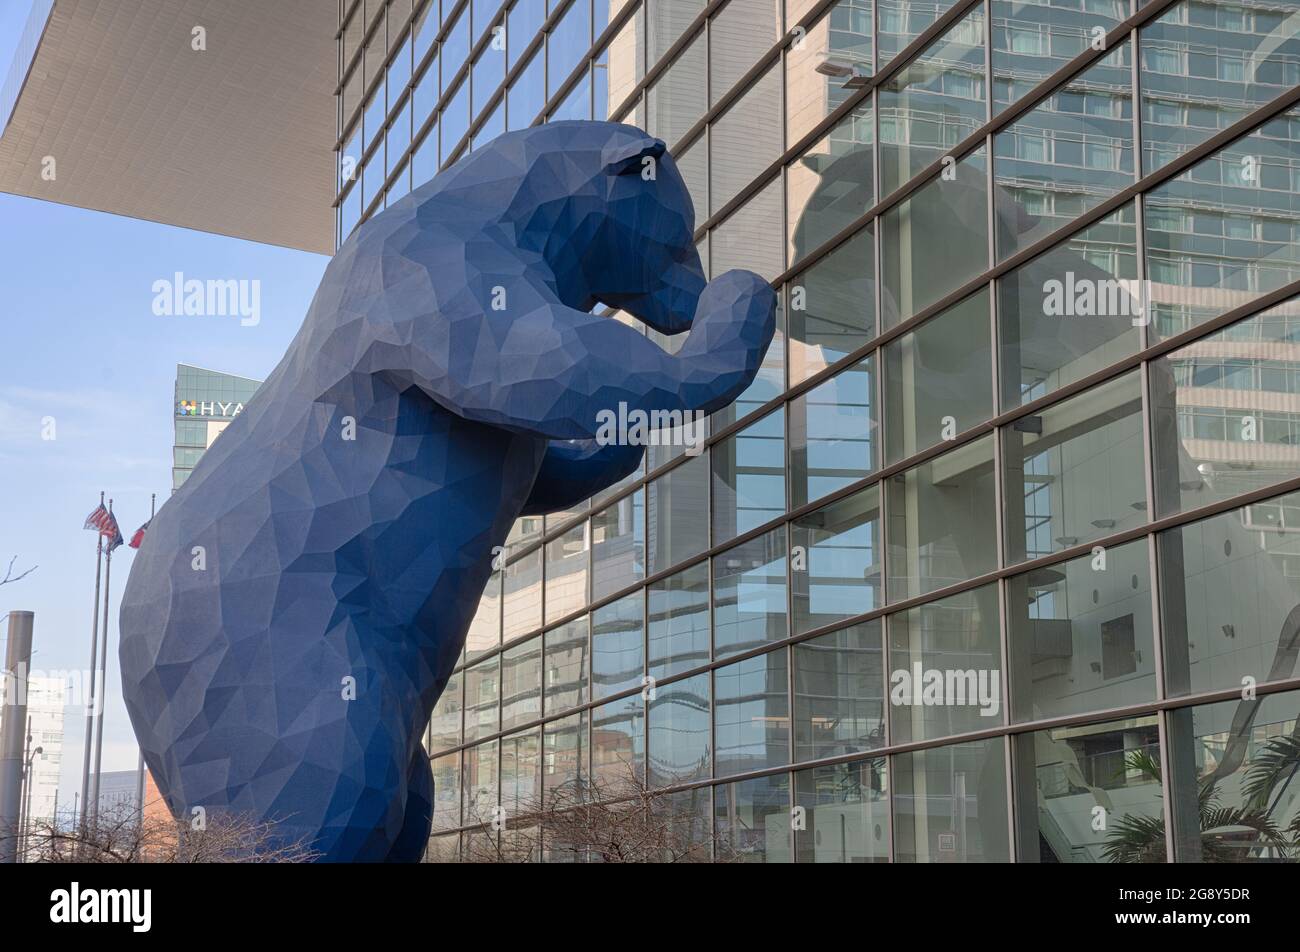 Denver, CO - 7 mars 2021 : sculpture « I See What You Mean » créée par l'artiste Lawrence argent en 2005. Le Big Blue Bear, comme on l'appelle souvent, pointe Banque D'Images